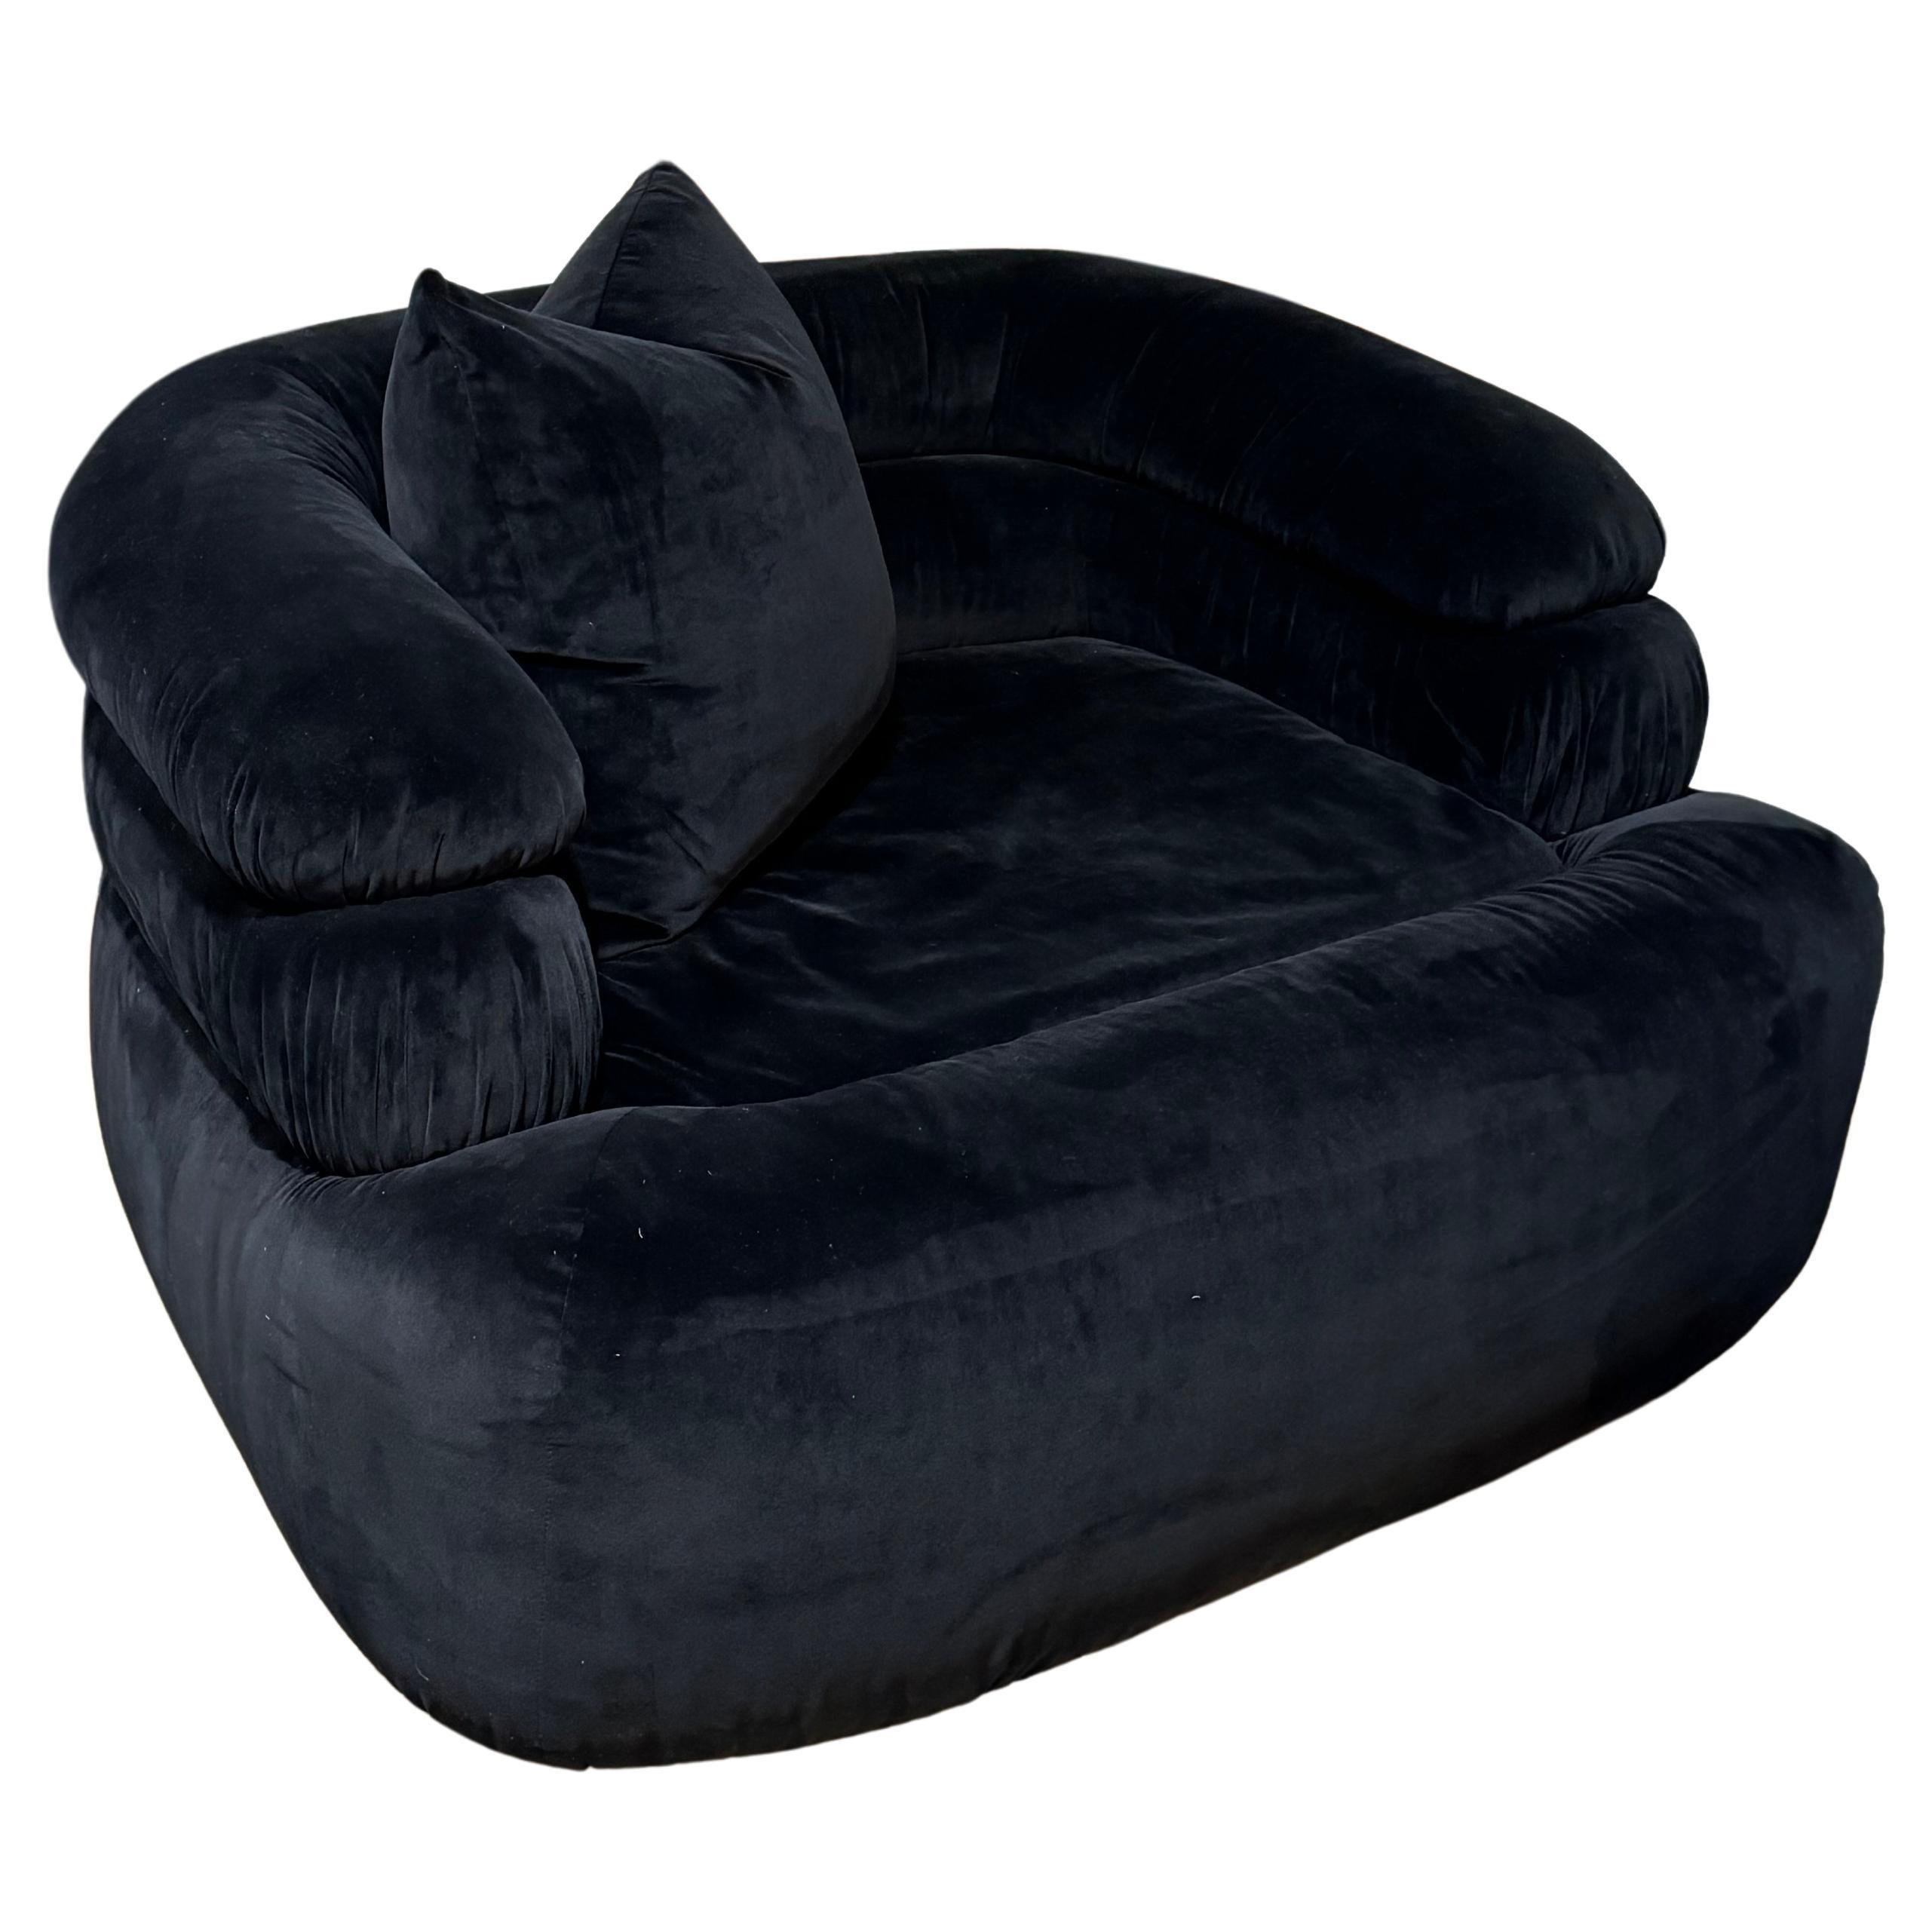 Custom MLB Round Back Channeled Swivel Club Chair
Upholstered in Black Velvet
COM (Customer's Own Material) Available
